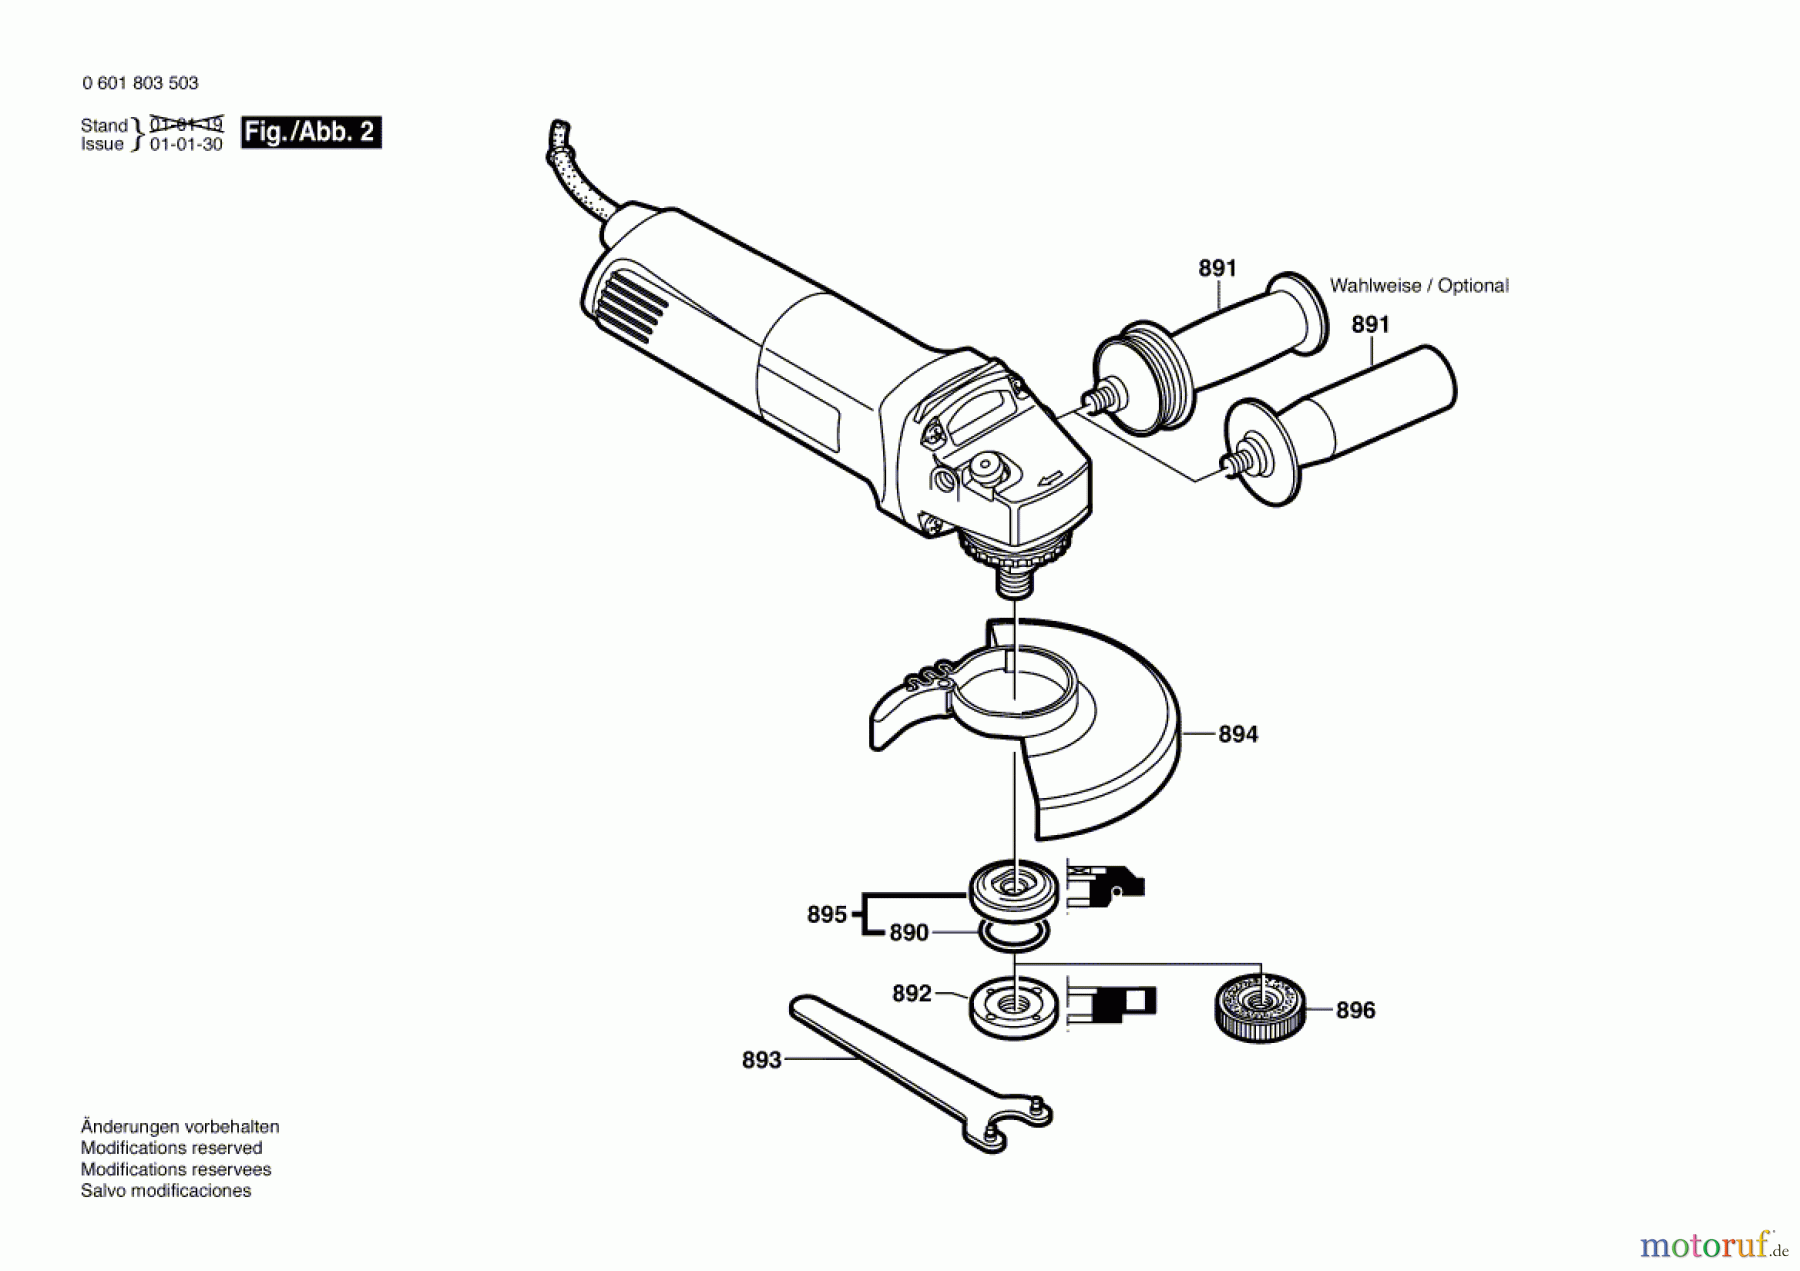  Bosch Werkzeug Winkelschleifer GWS 10-125 CE Seite 2